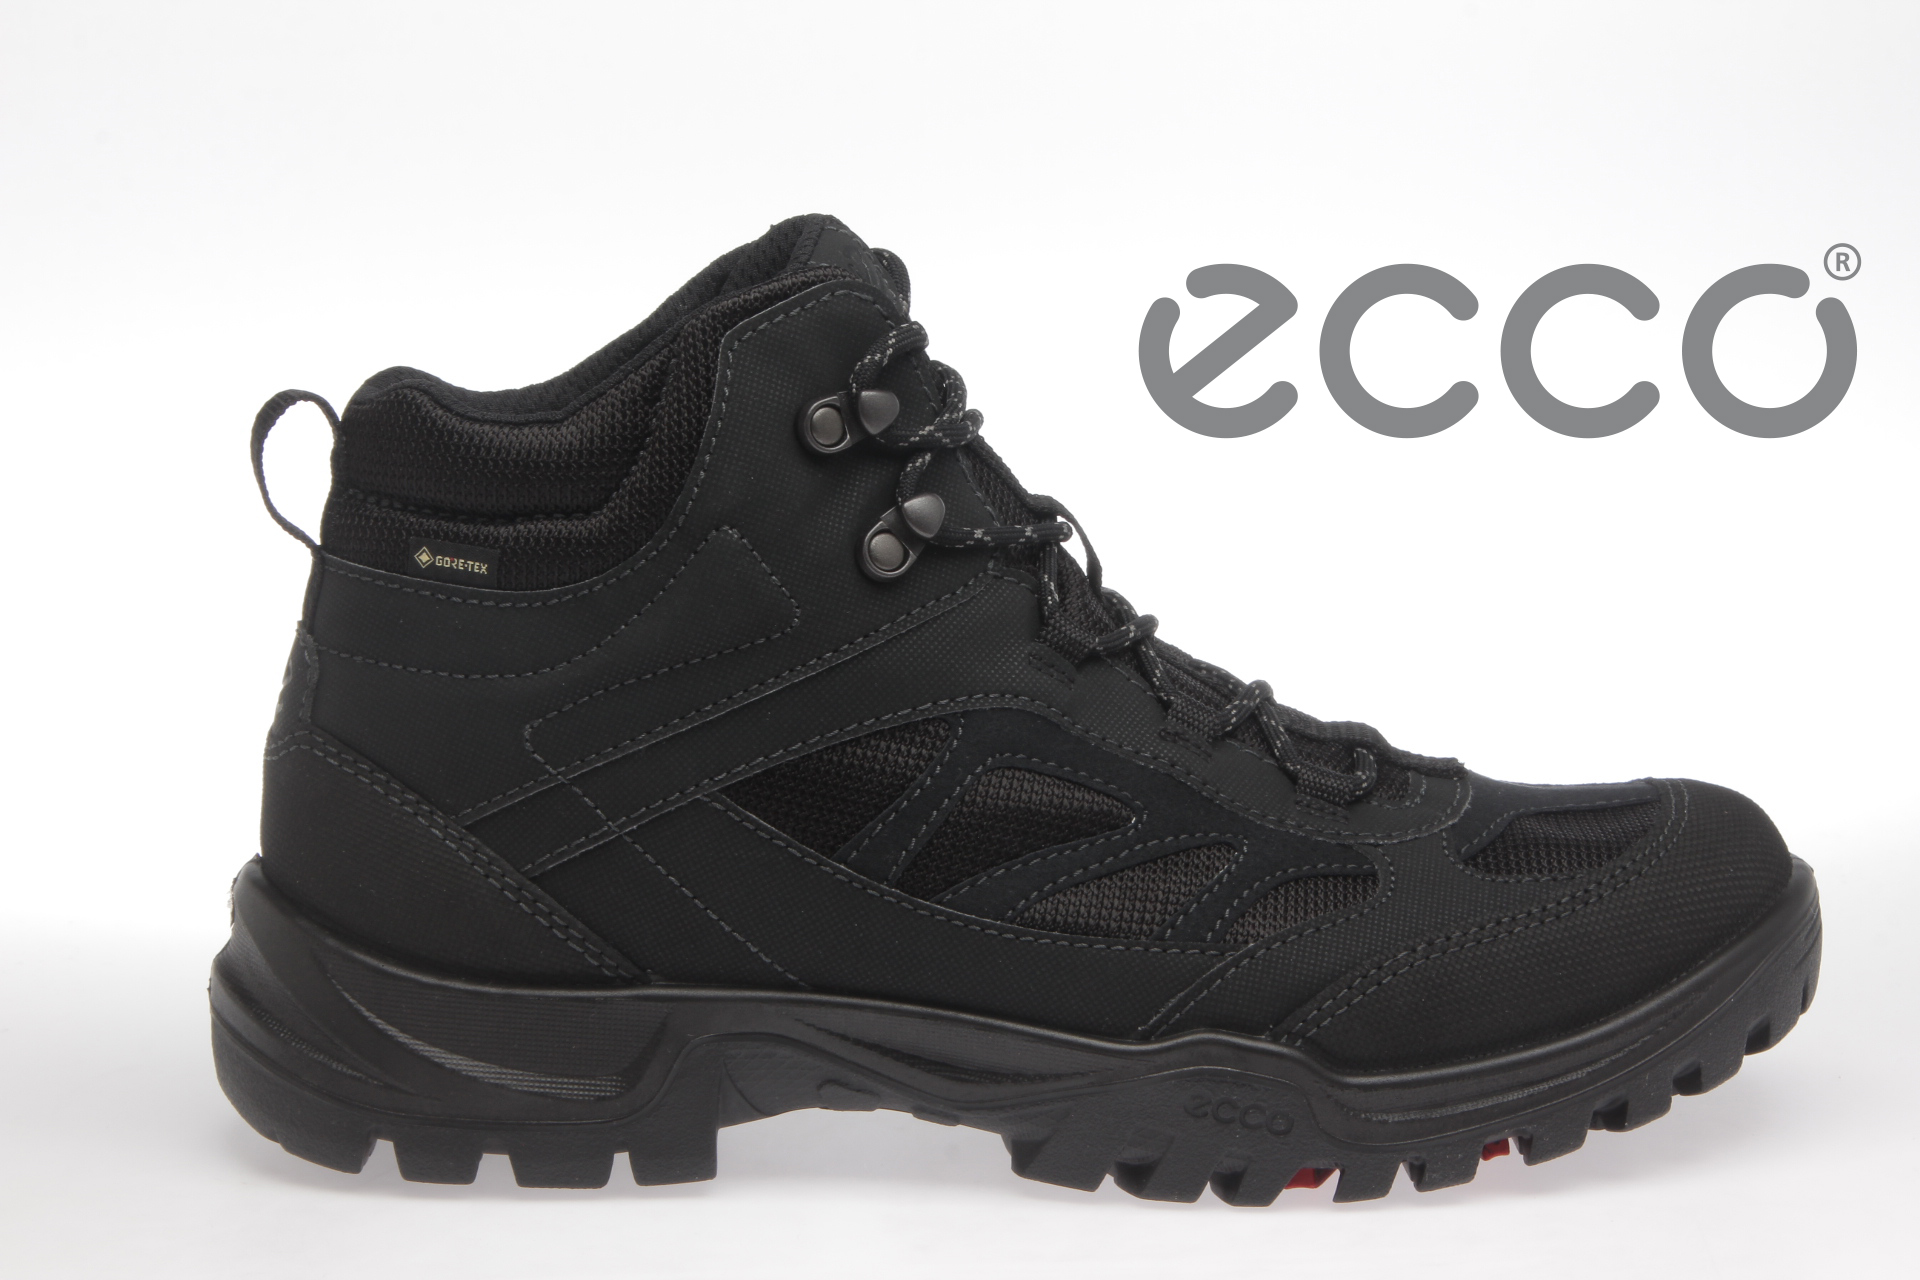 ECCO Bella - Long boots | Boozt.com